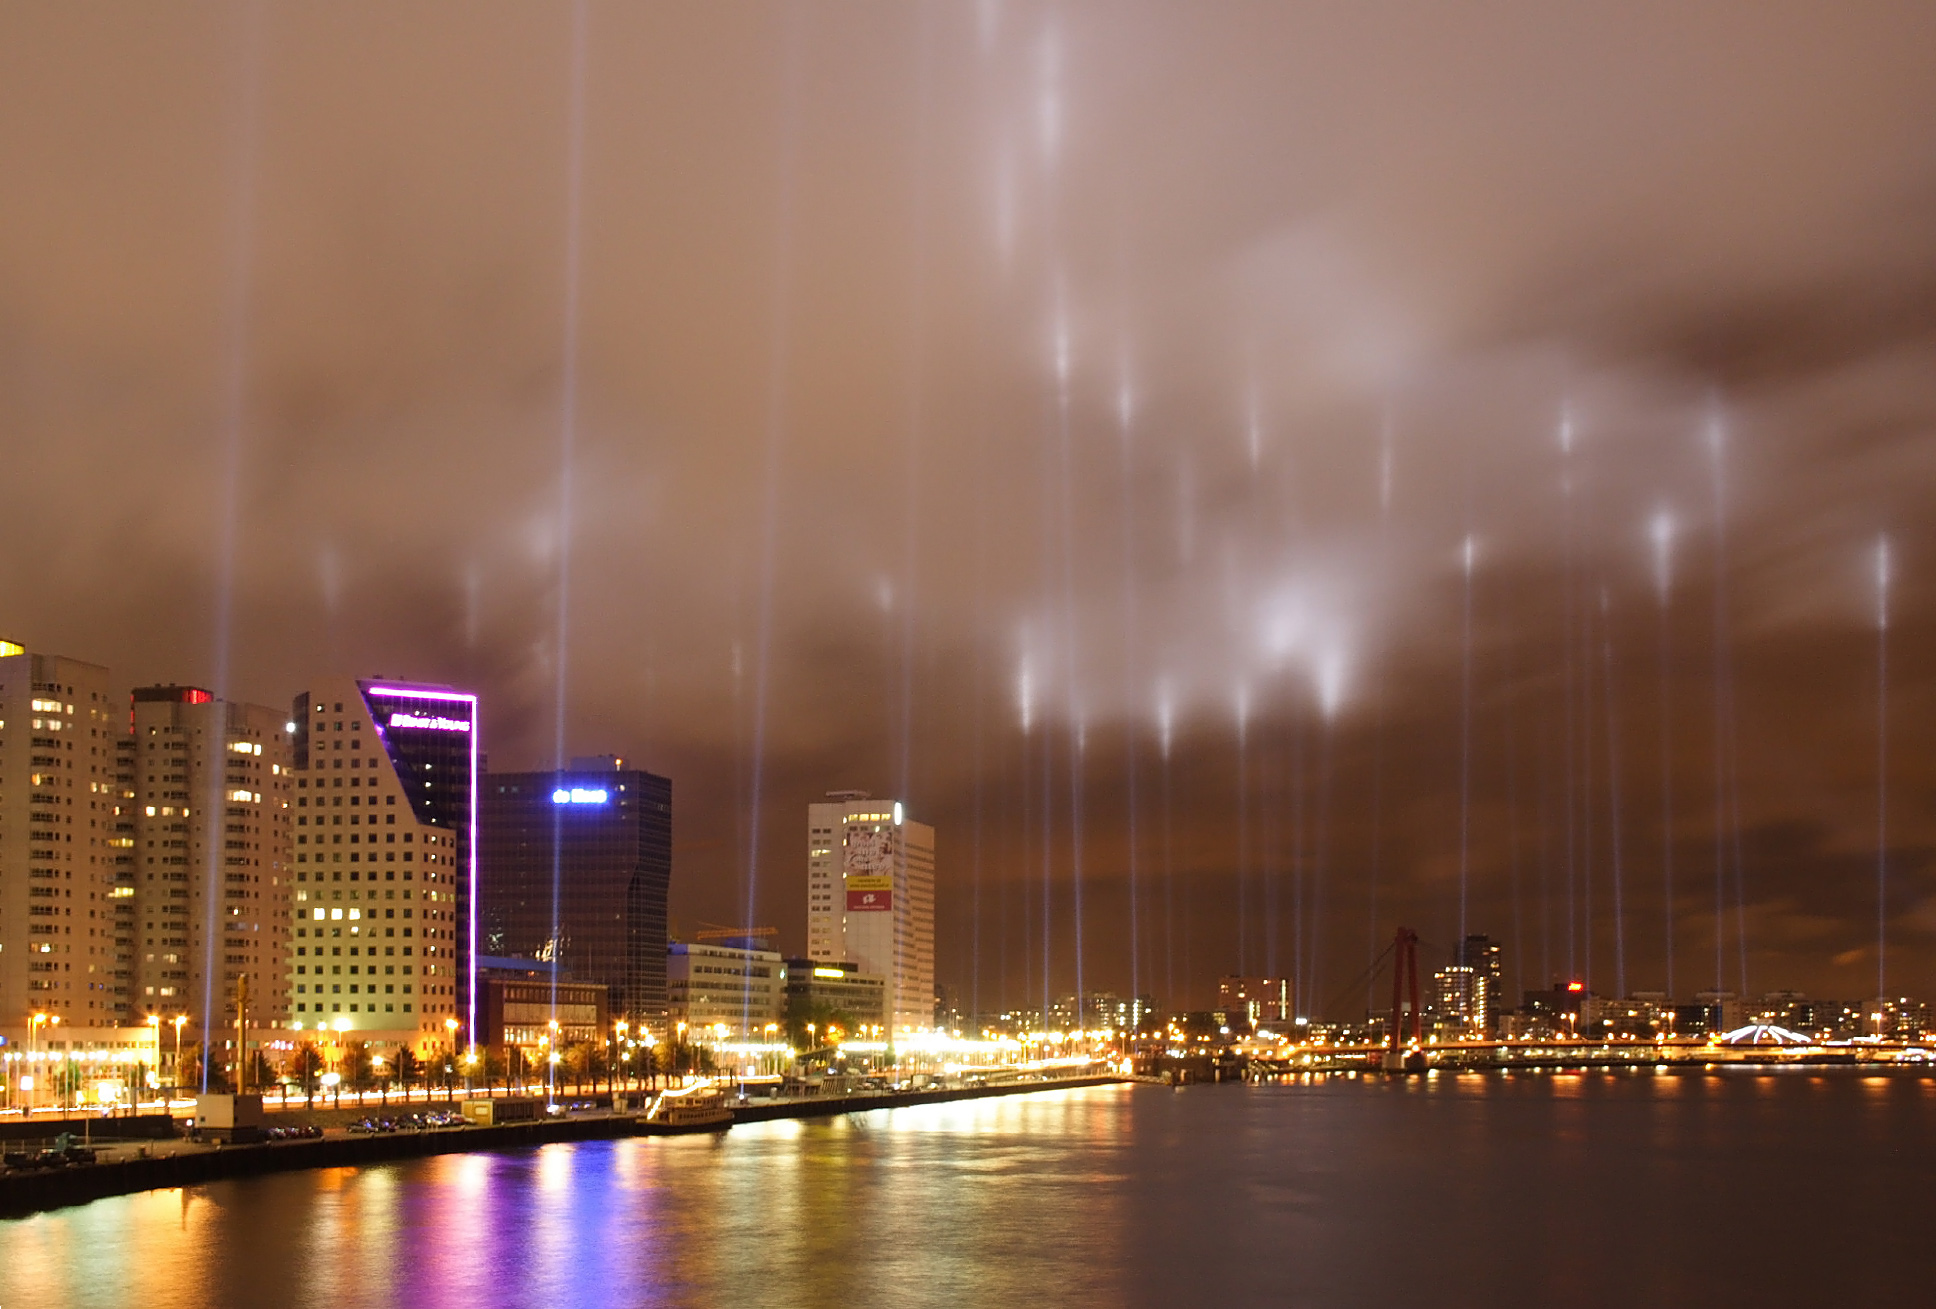 Rotterdam - Wikipedia